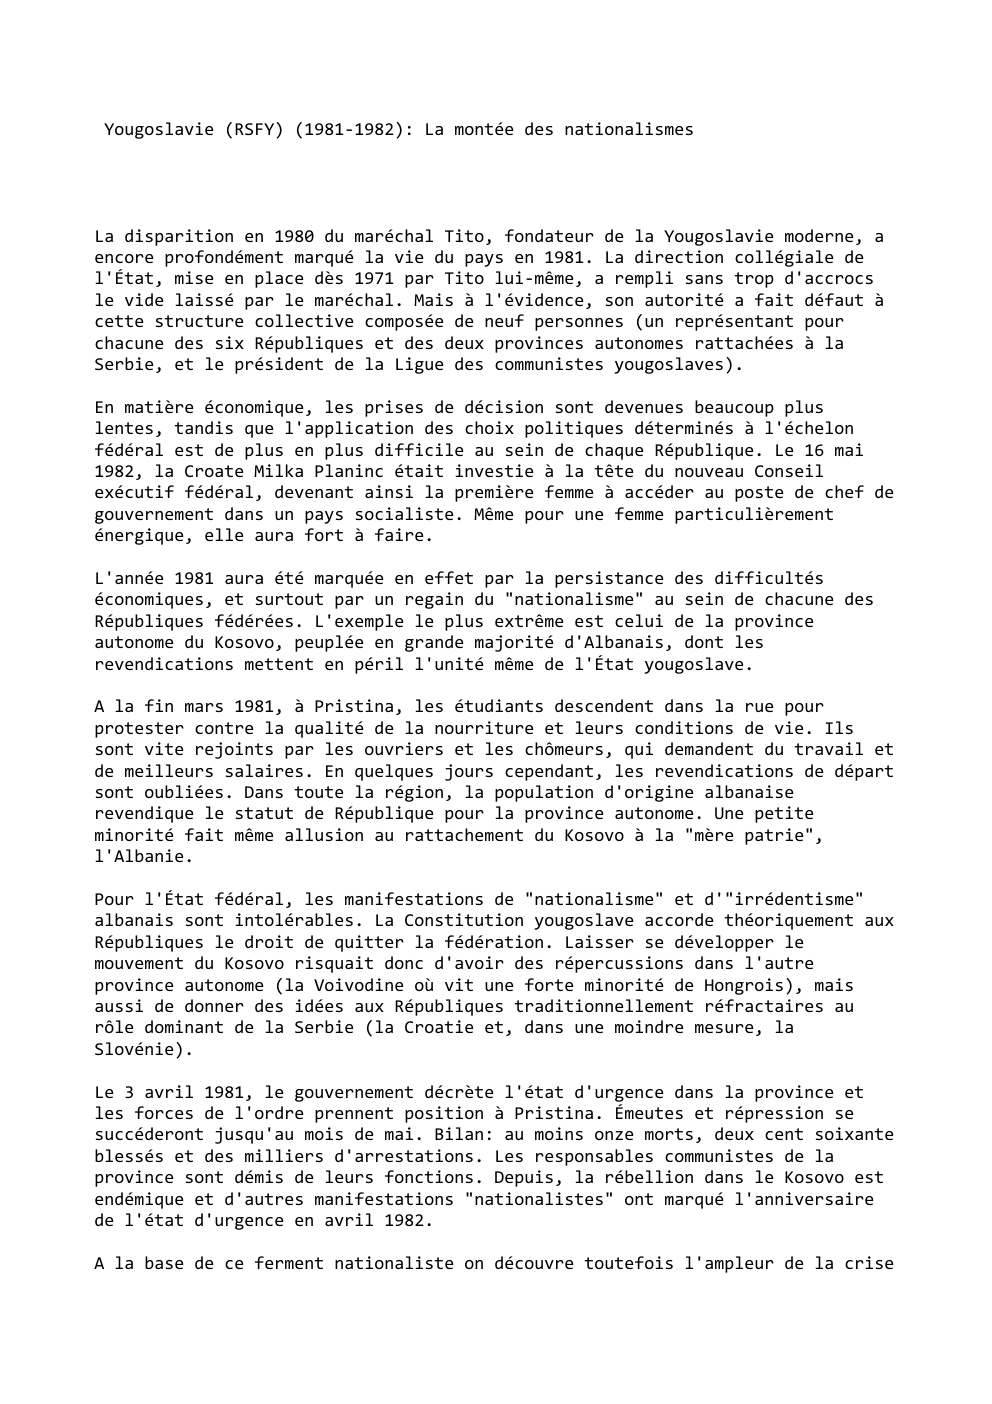 Prévisualisation du document Yougoslavie (RSFY) (1981-1982): La montée des nationalismes

La disparition en 1980 du maréchal Tito, fondateur de la Yougoslavie moderne, a...